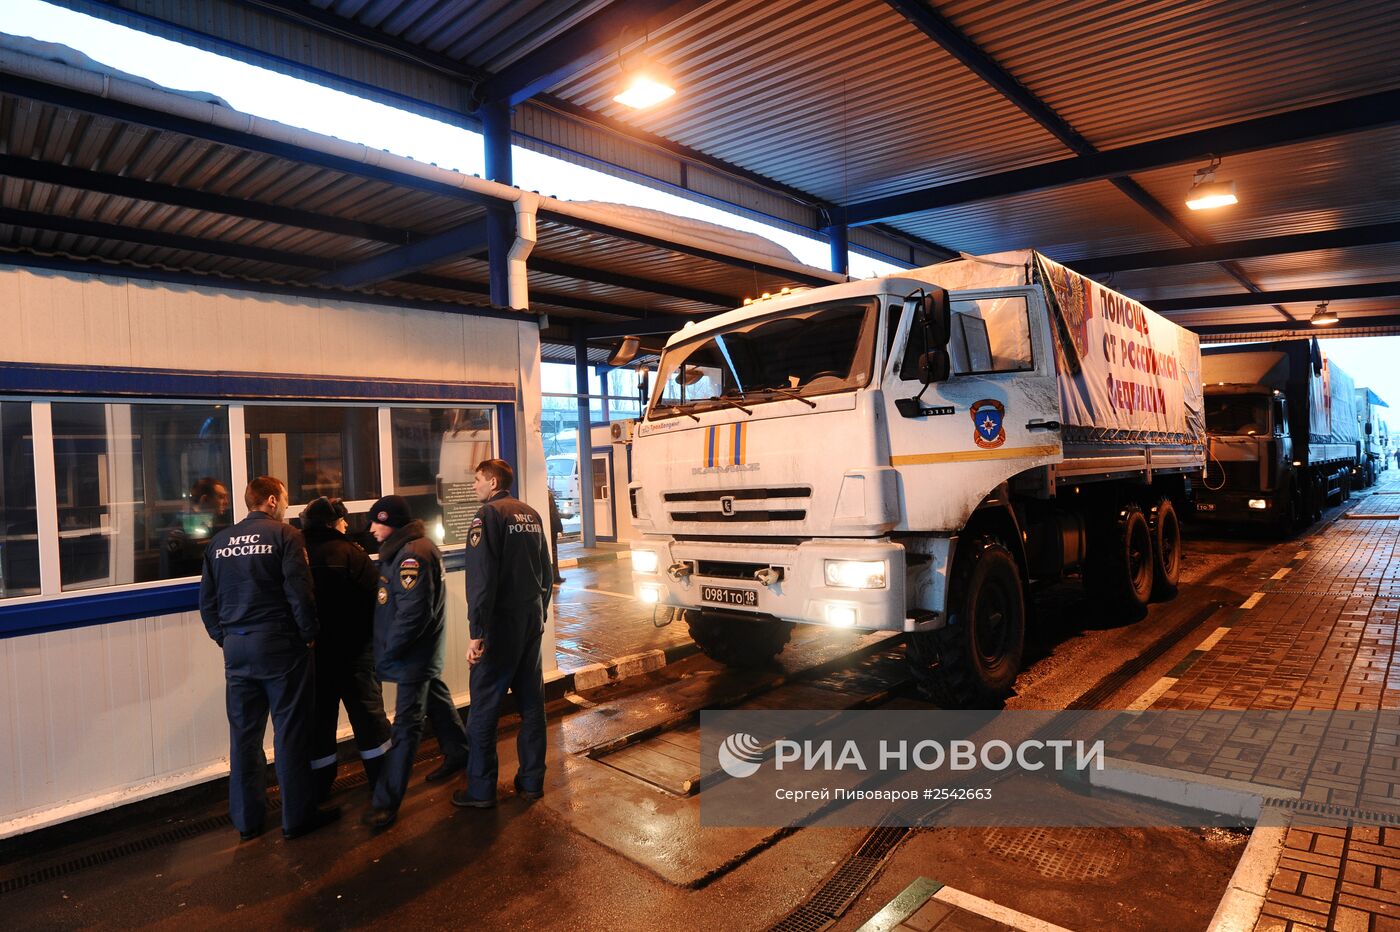 Девятый российский гуманитарный конвой для Донбасса прибыл на КПП "Донецк"